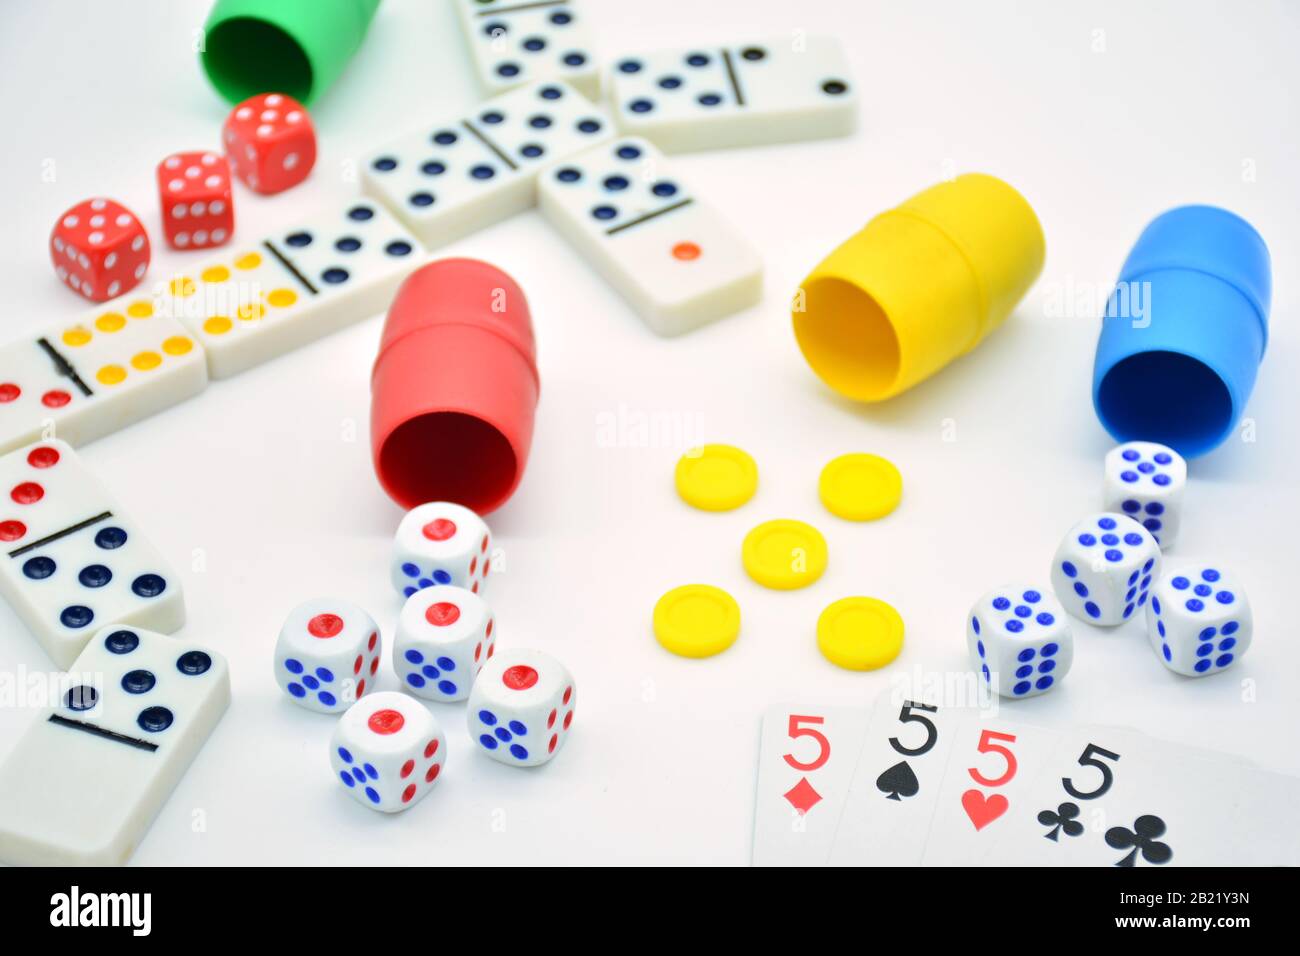 Juegos de mesa, parchis, ajedrez, dados, juegos de azar y estrategia sobre  fondo blanco Stock Photo - Alamy